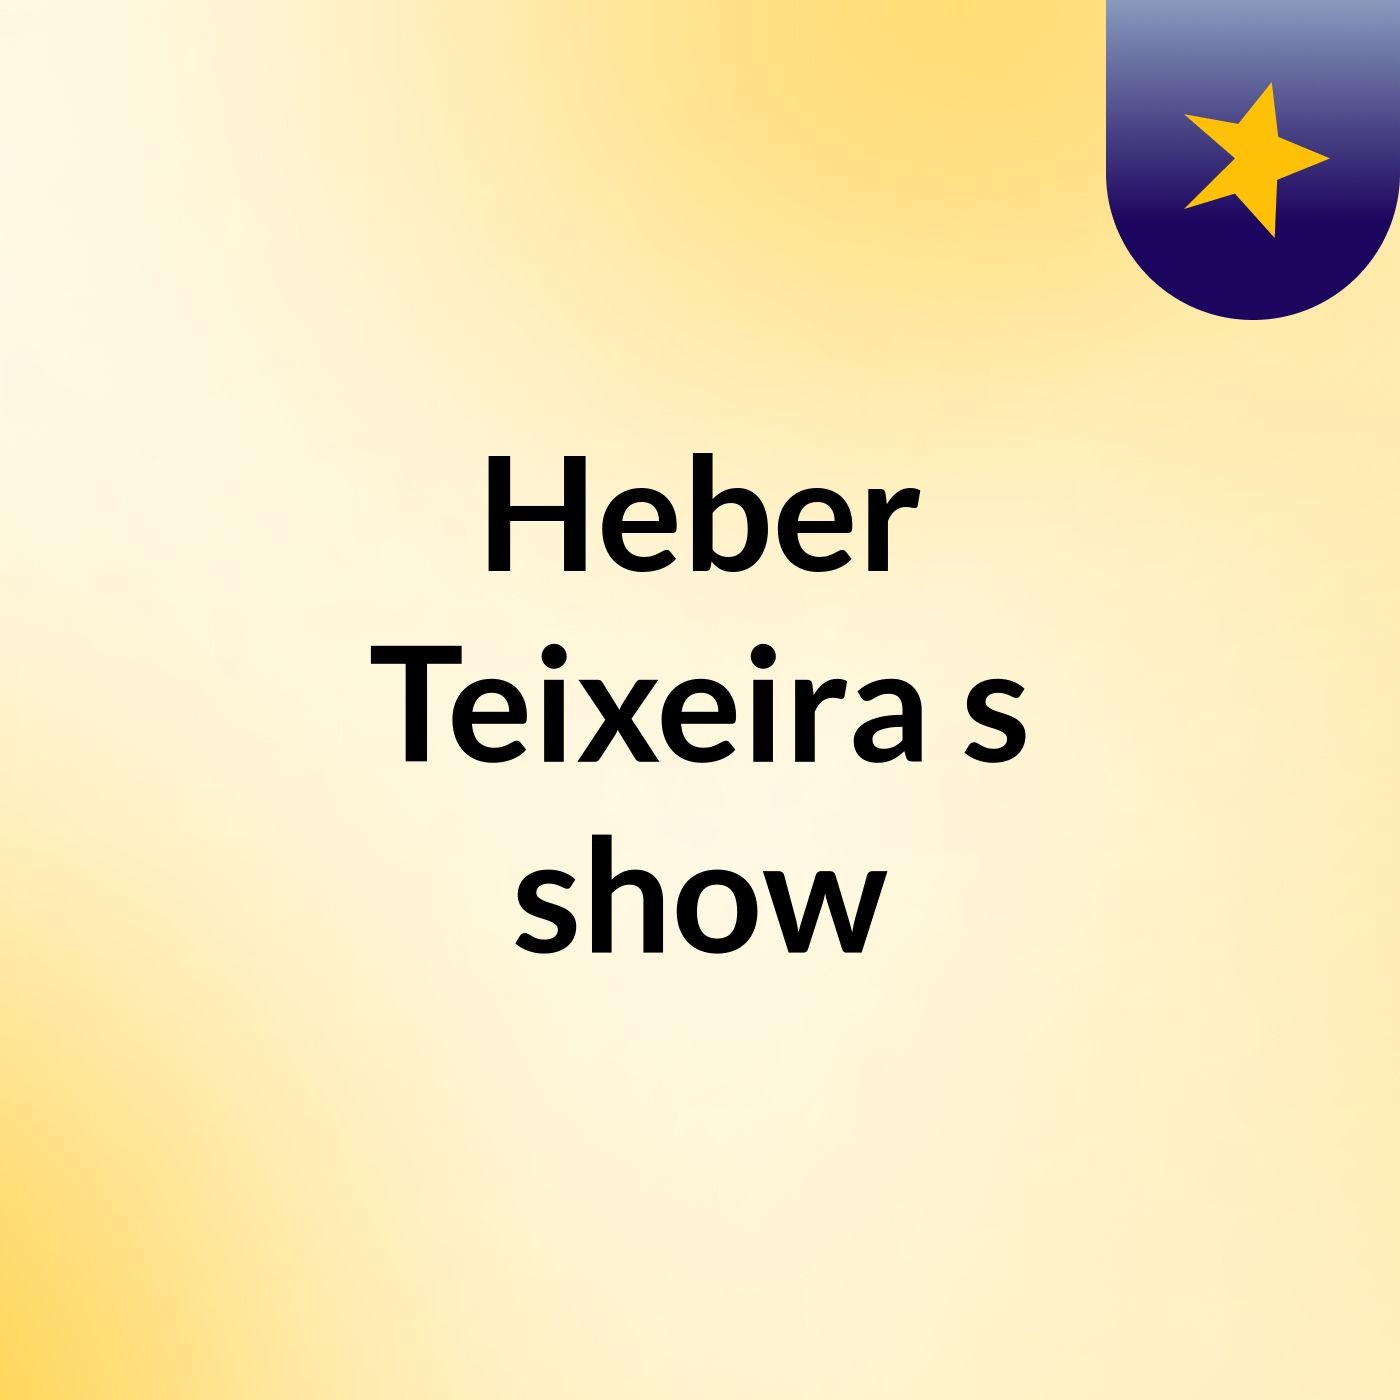 Heber Teixeira's show